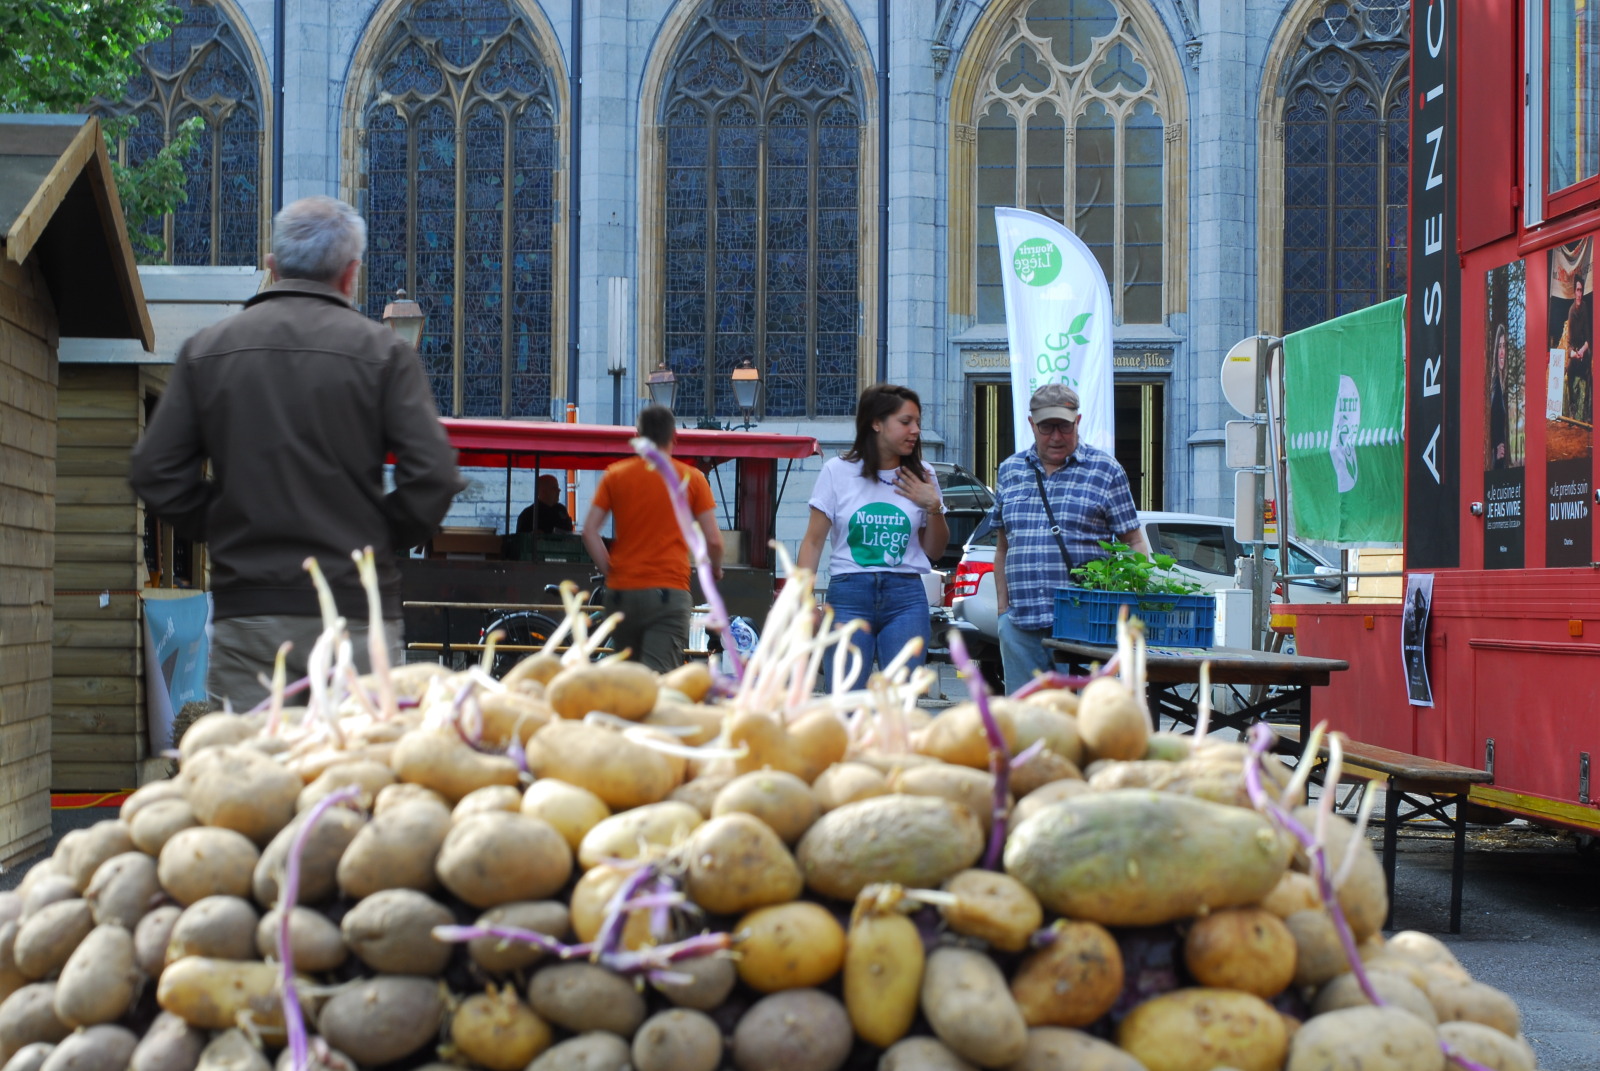 Amas de pommes de terre devant la cathédrale de Liège